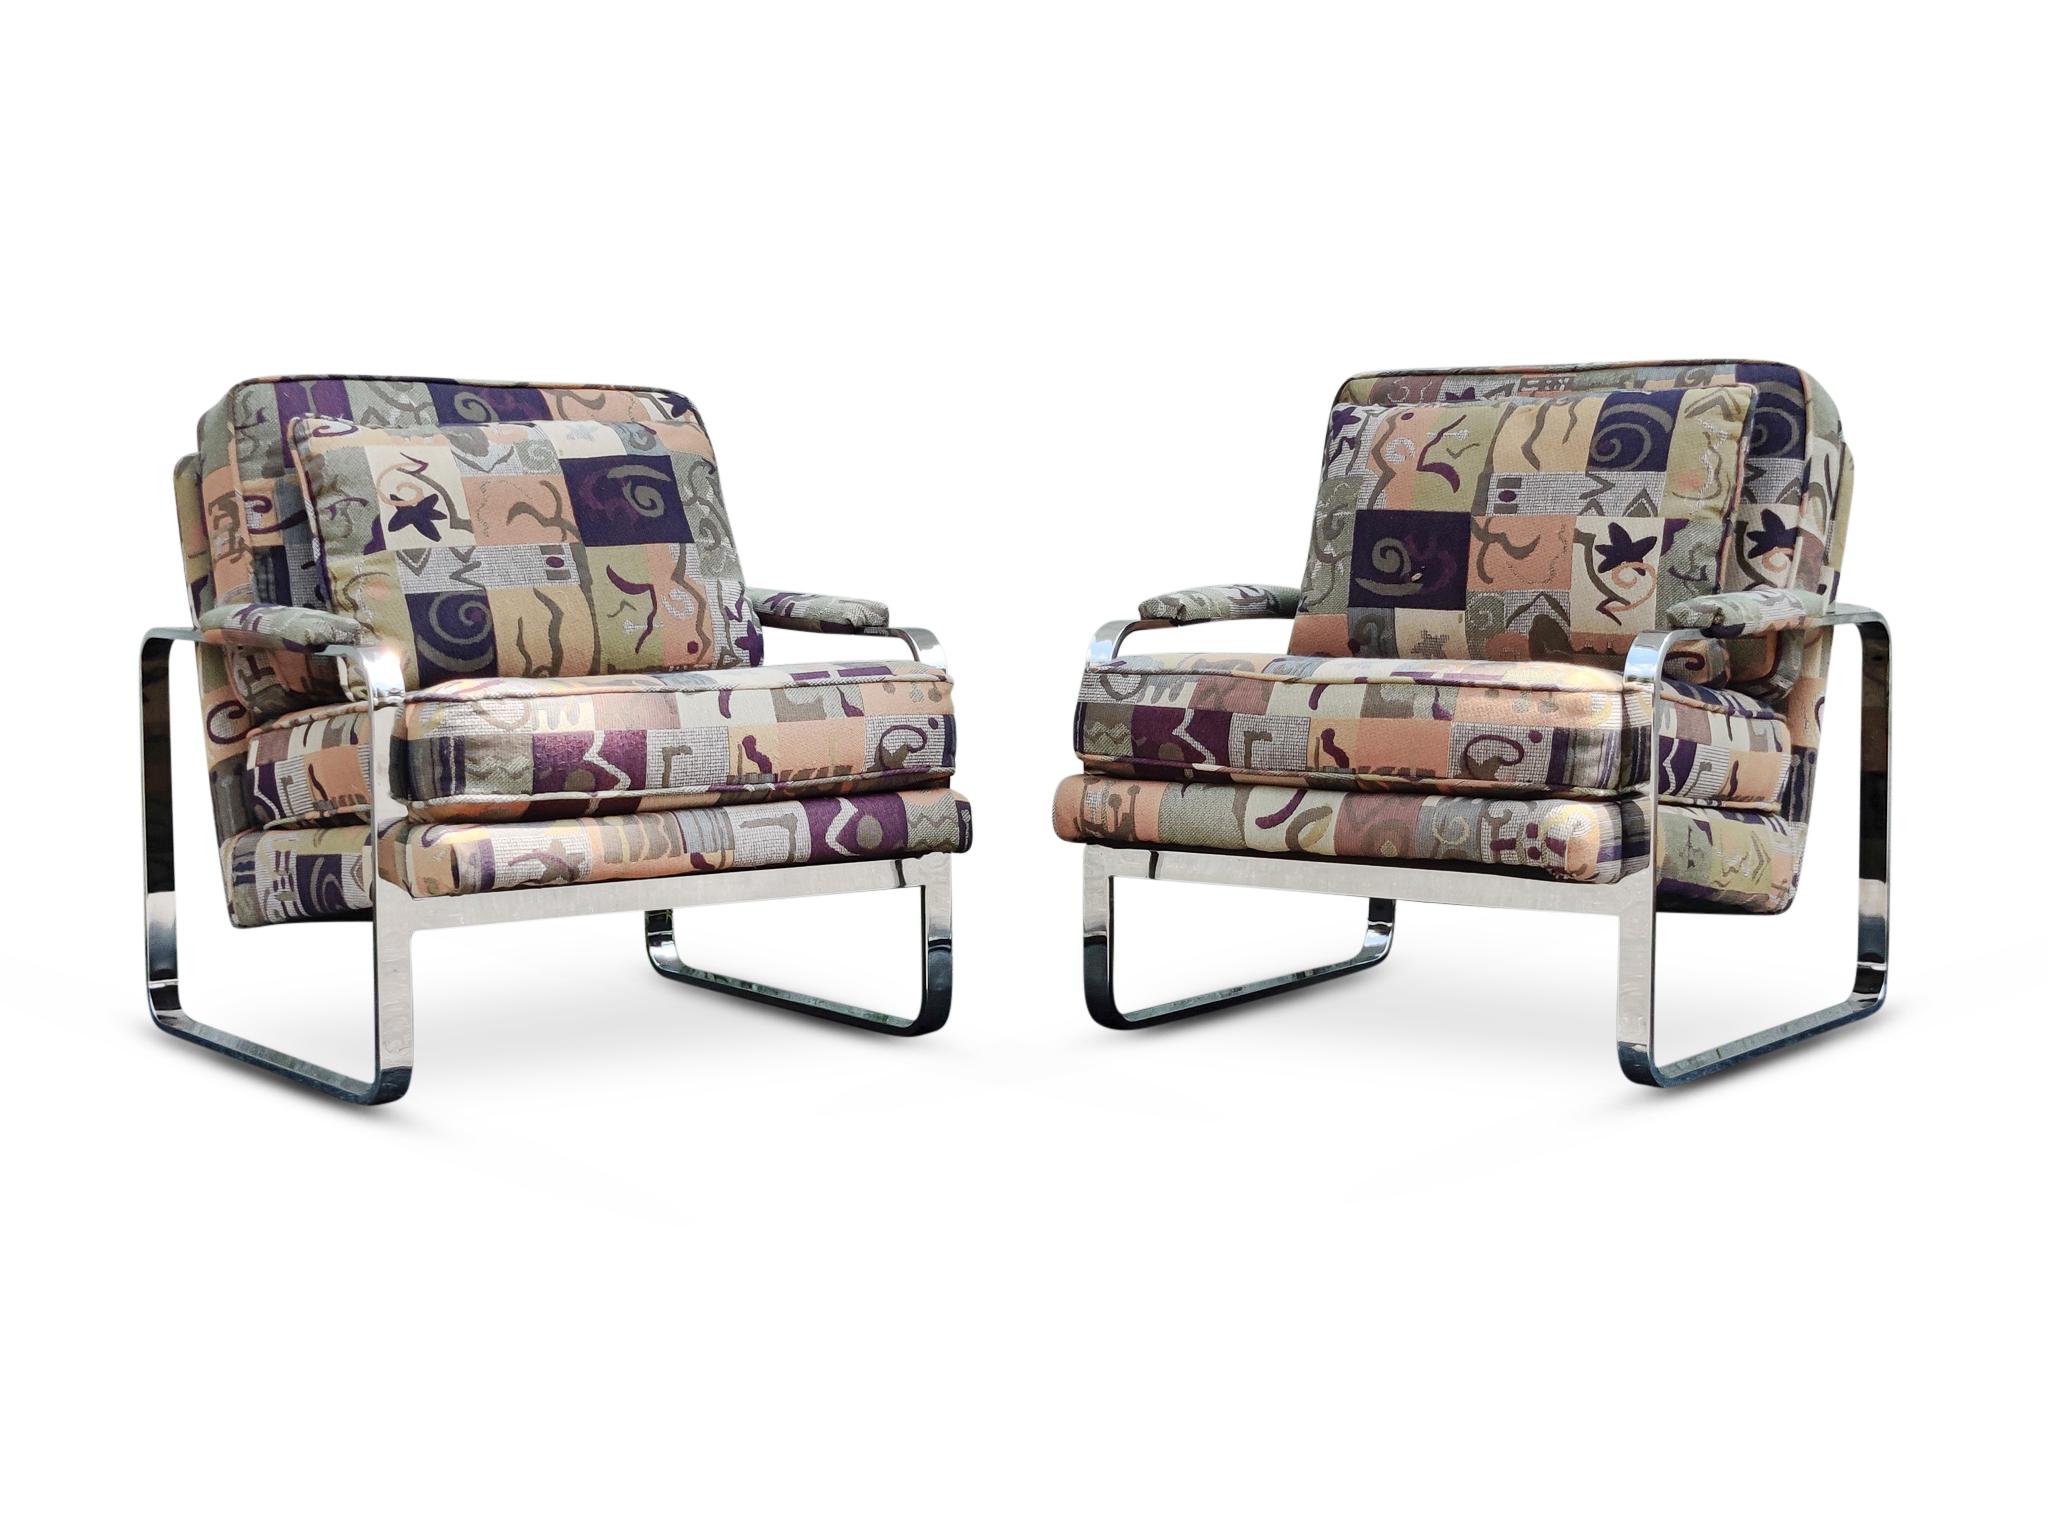 Une belle paire de chaises longues basses et larges dans le style iconique de Milo Baughman, et par le fabricant de qualité supérieure, Bernhardt. Cette paire de fauteuils club des années 1970 a probablement été récupérée au milieu des années 90.